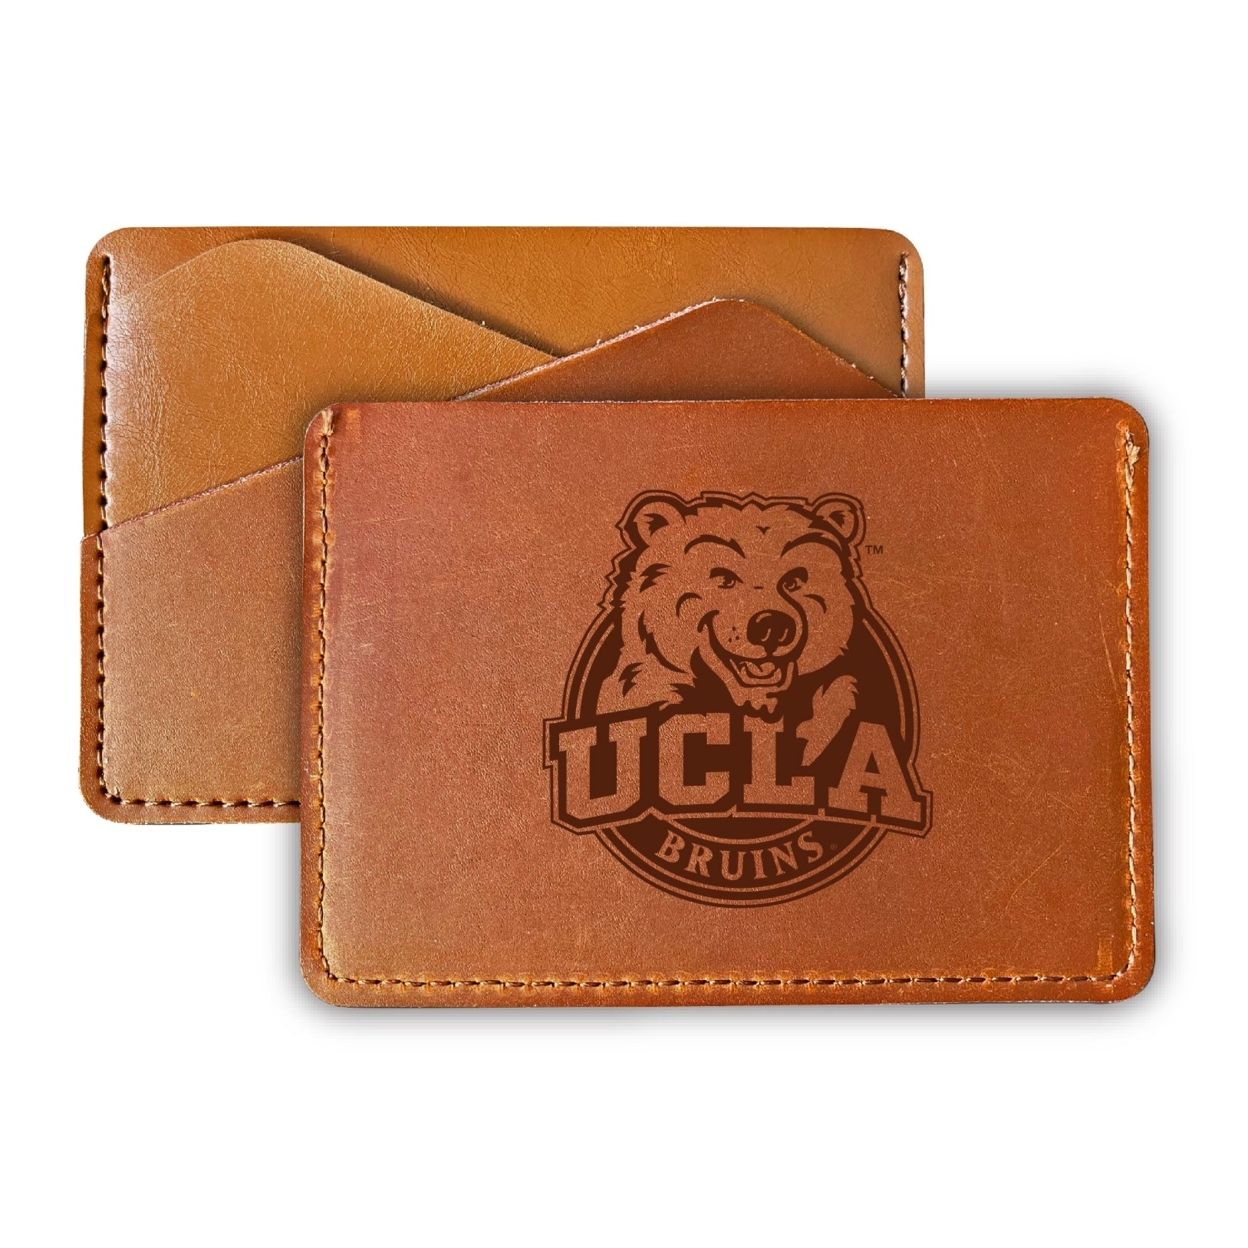 UCLA Bruins College Leather Card Holder Wallet